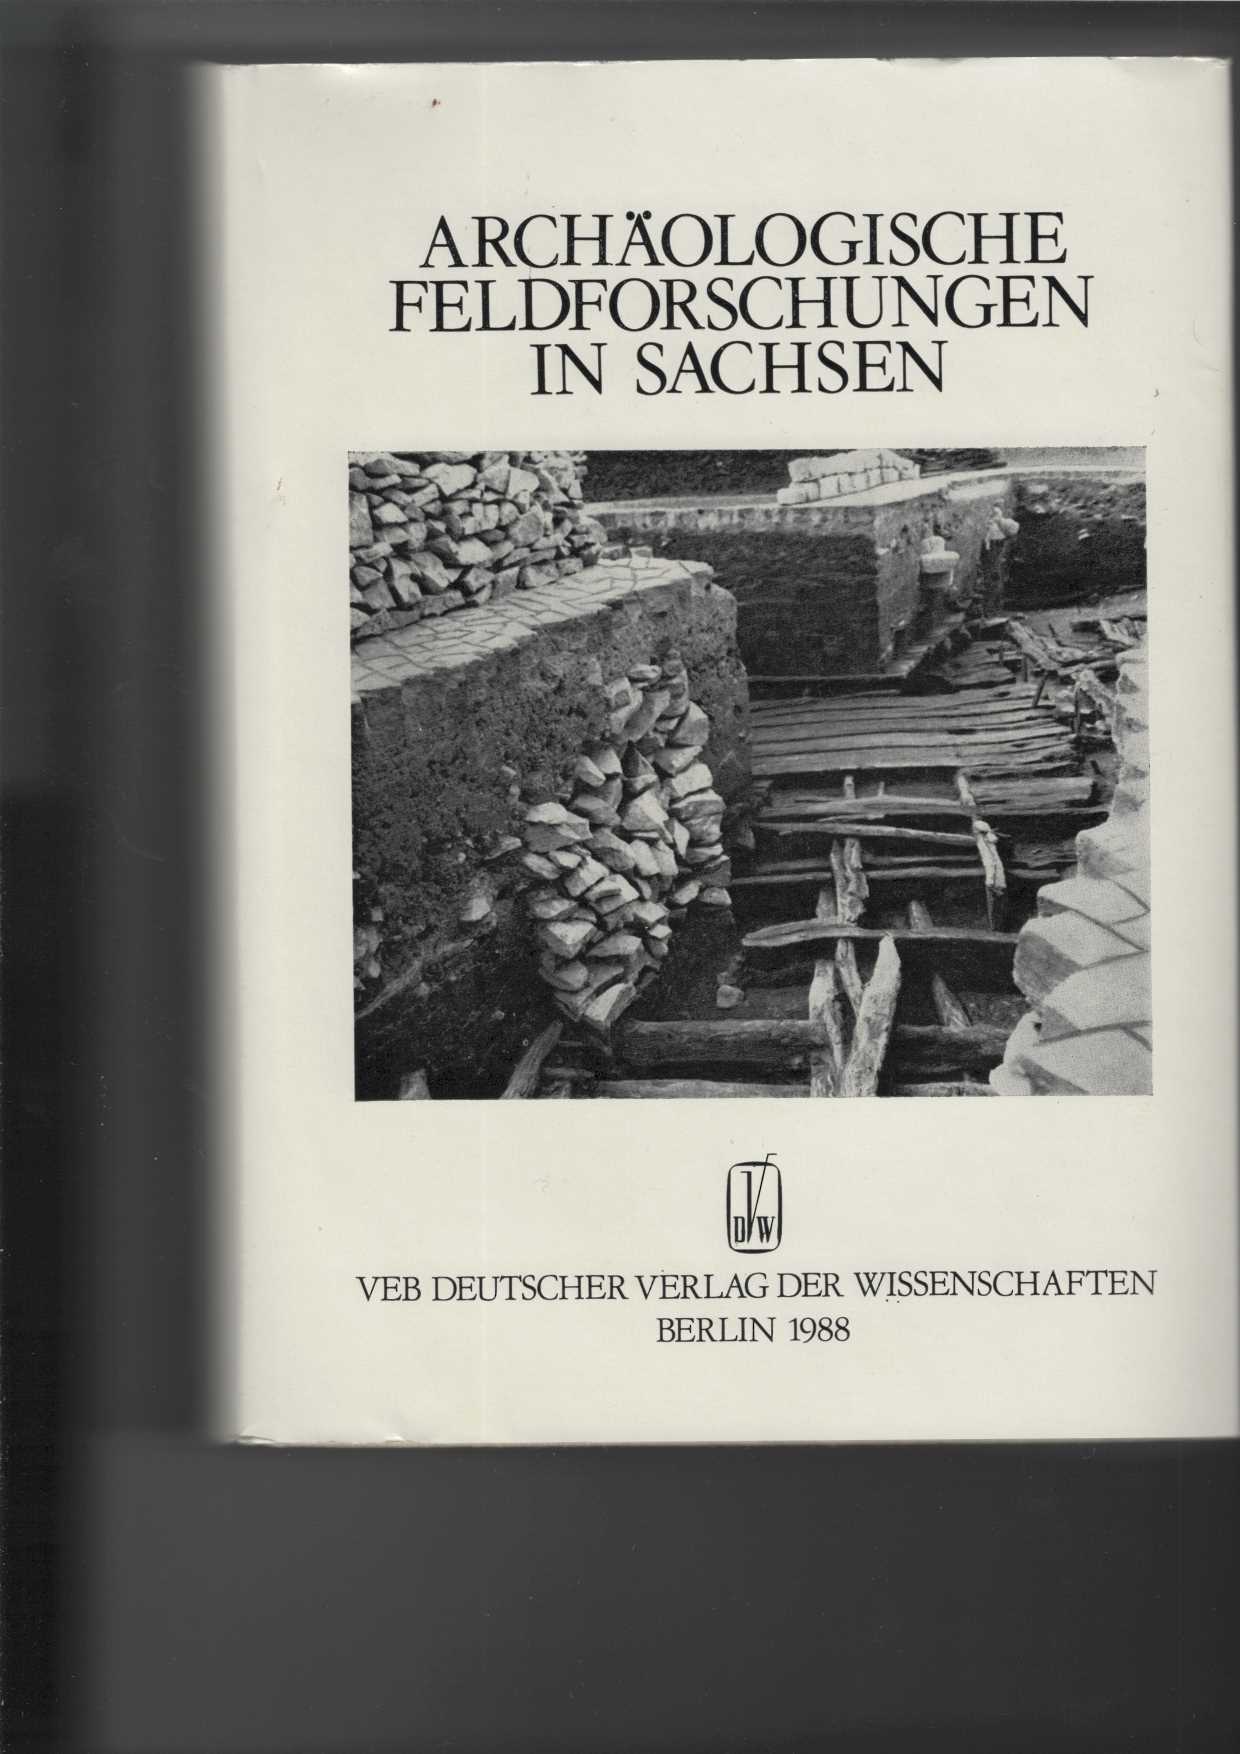 Archäologische Feldforschungen in Sachsen. Fünfzig Jahre Landesmuseum für Vorgeschichte Dresden. - Vogt, Heinz-Joachim